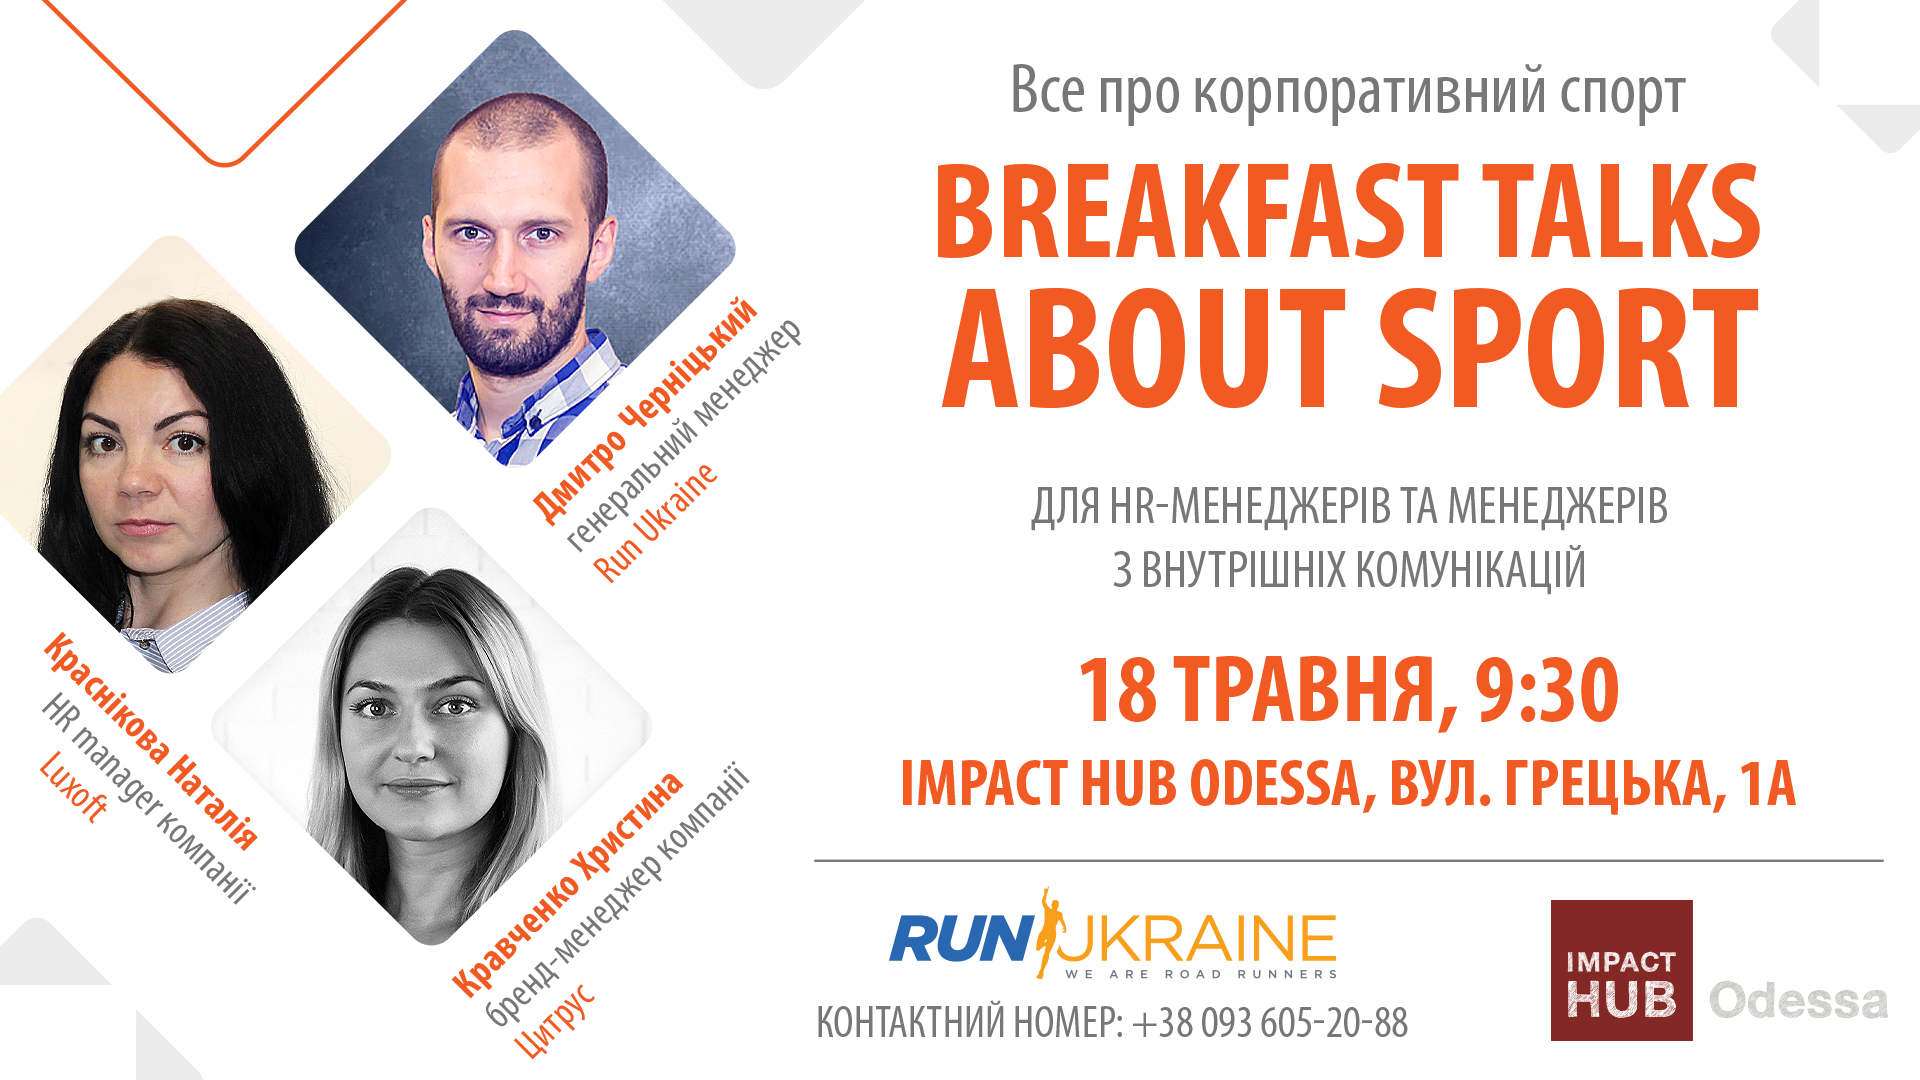 Зустріч для HR-спеціалістів Breakfast talks about sport (Одеса)